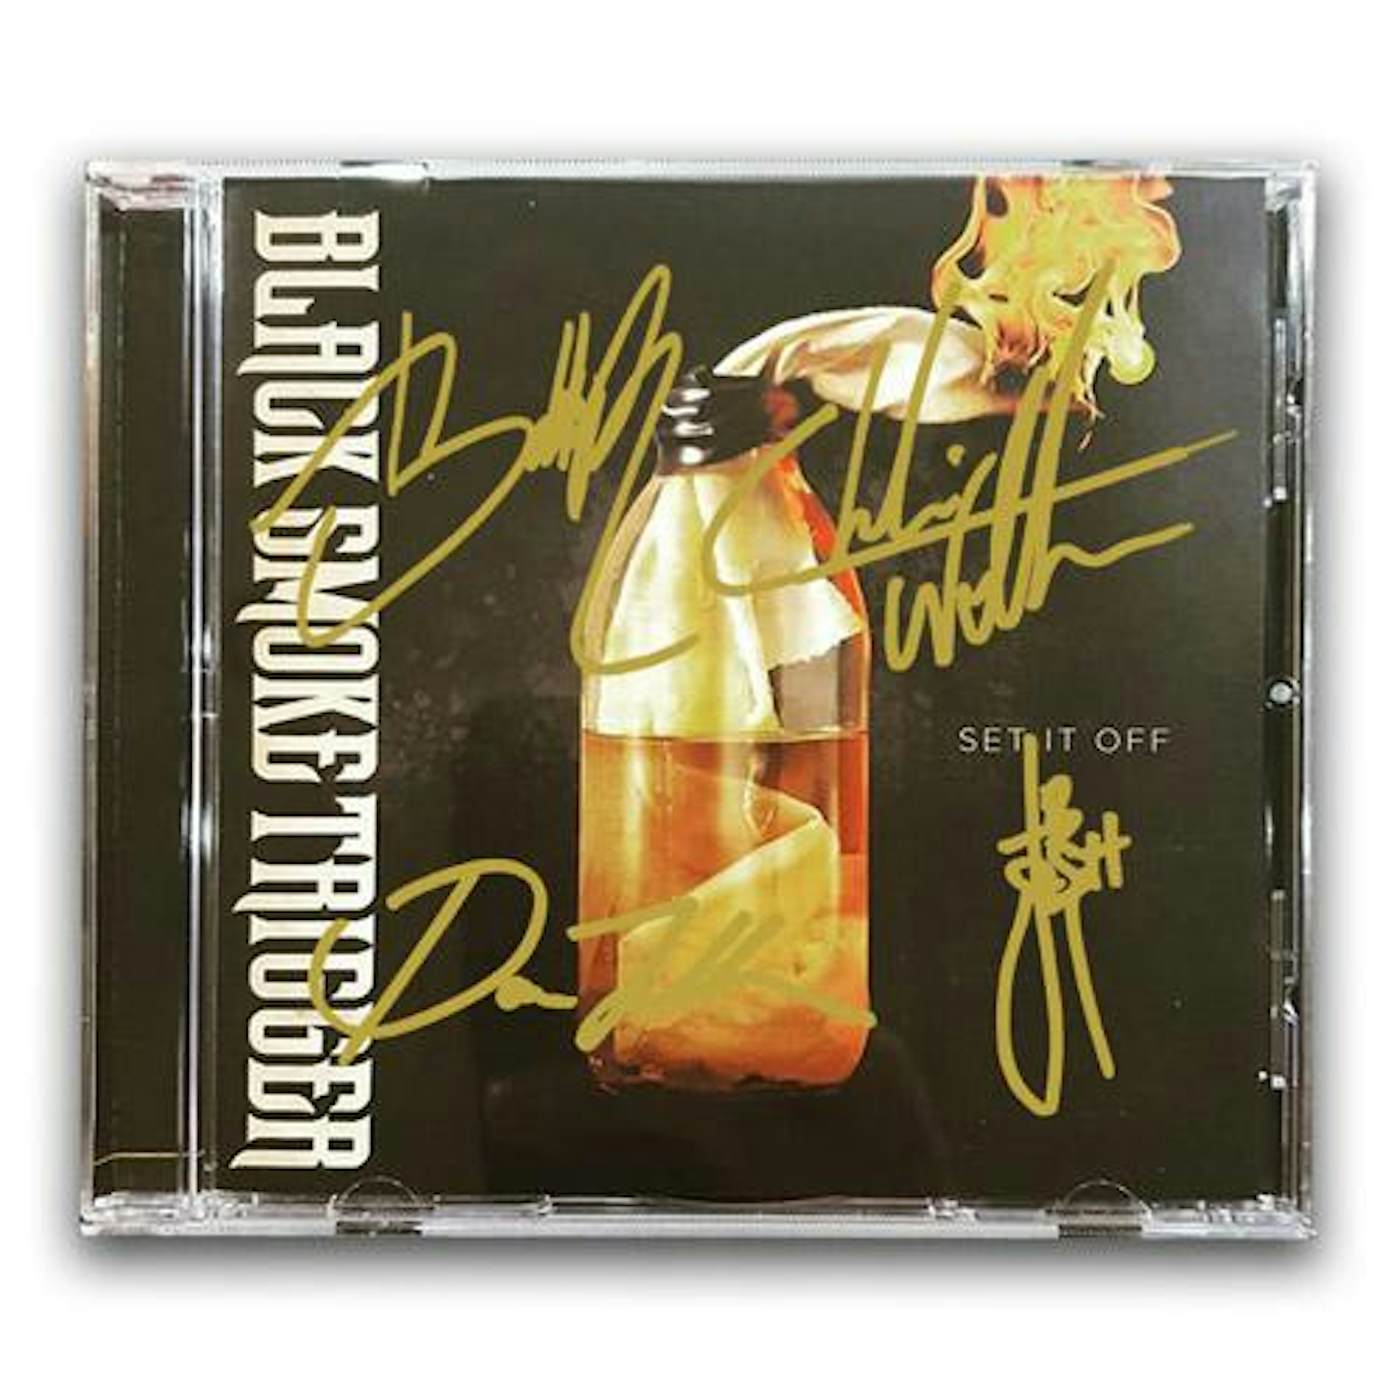 Black Smoke Trigger - Set It Off CD (Signed CD)